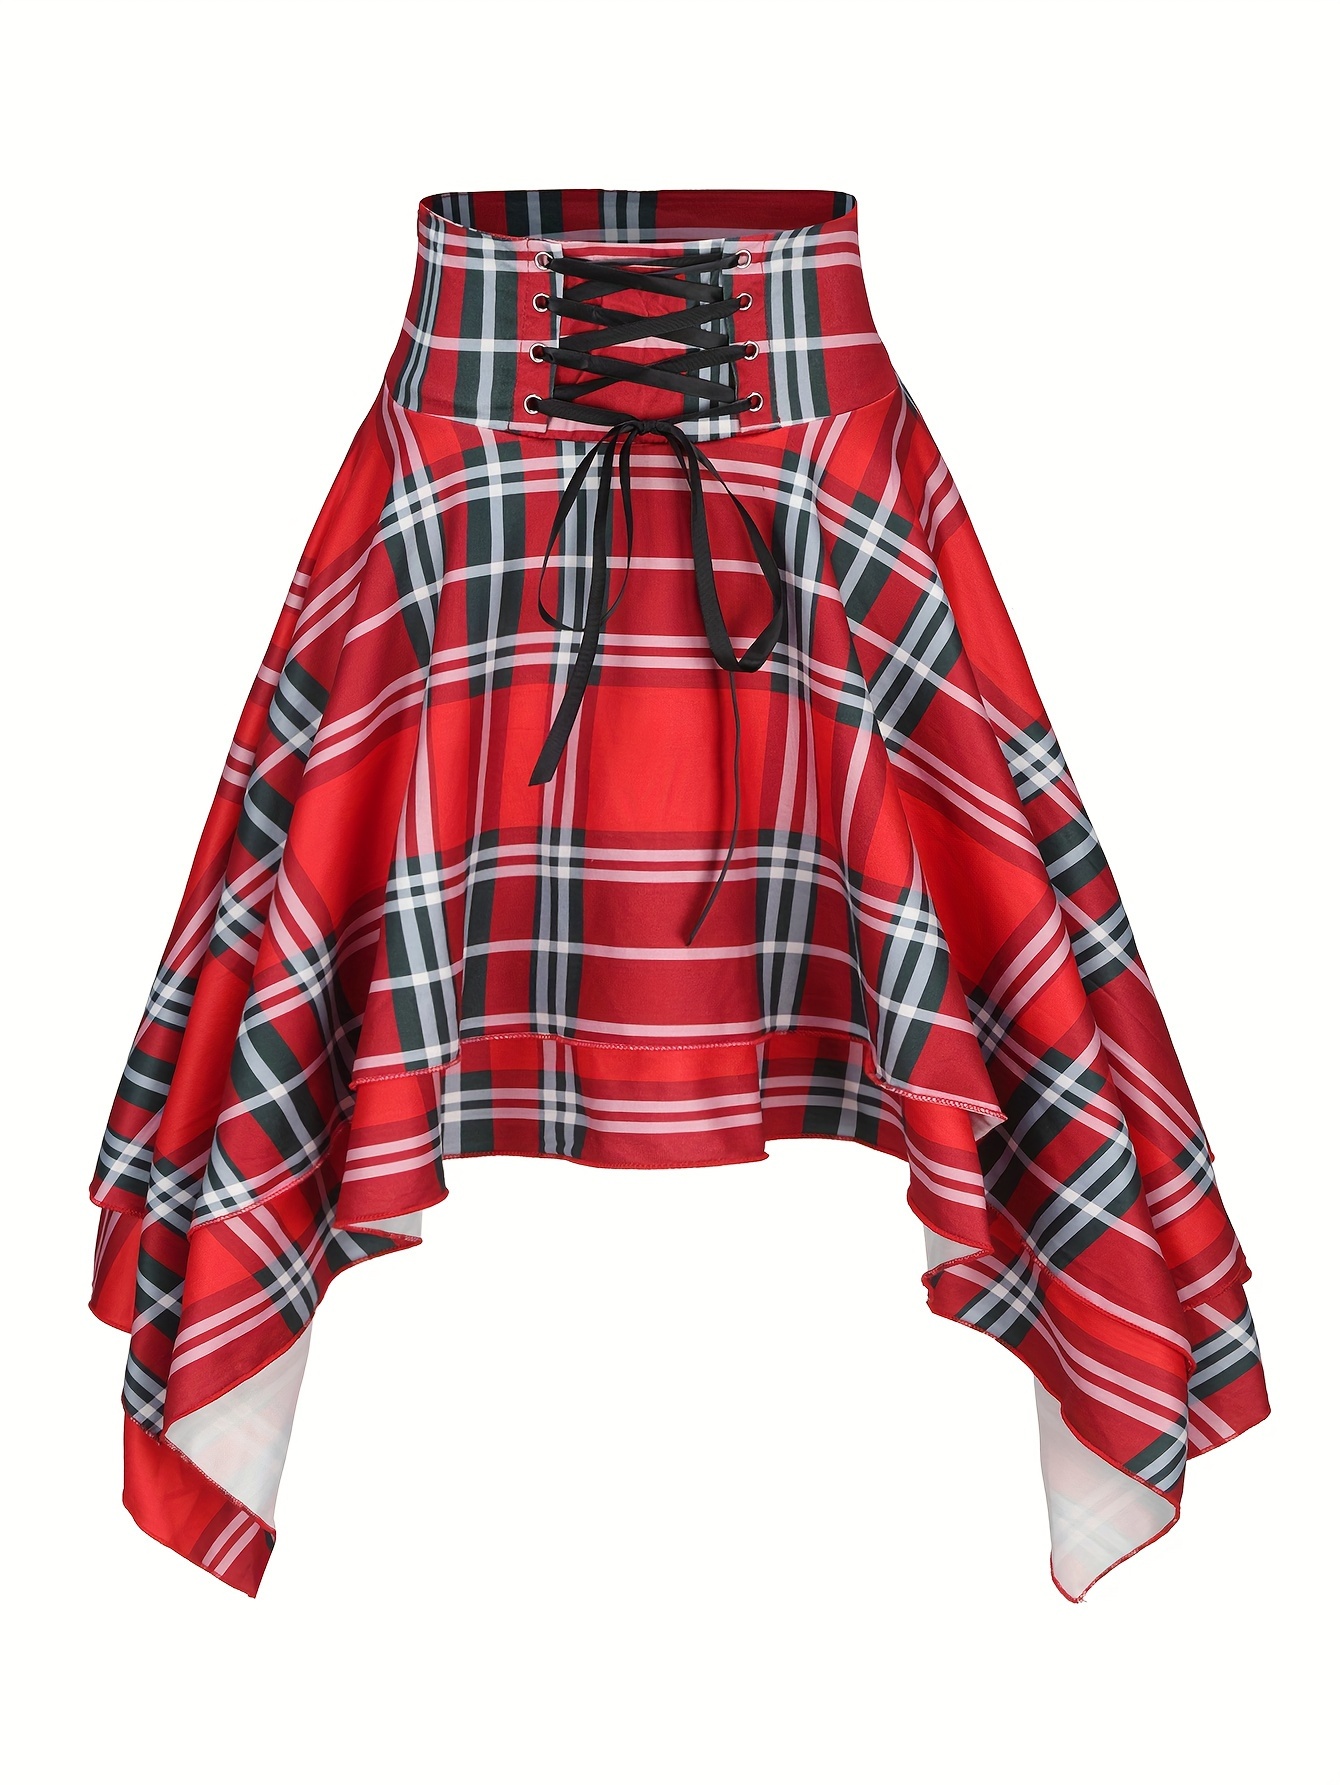 Buy Women's Women's Asymmetric Block Pleated Skirt